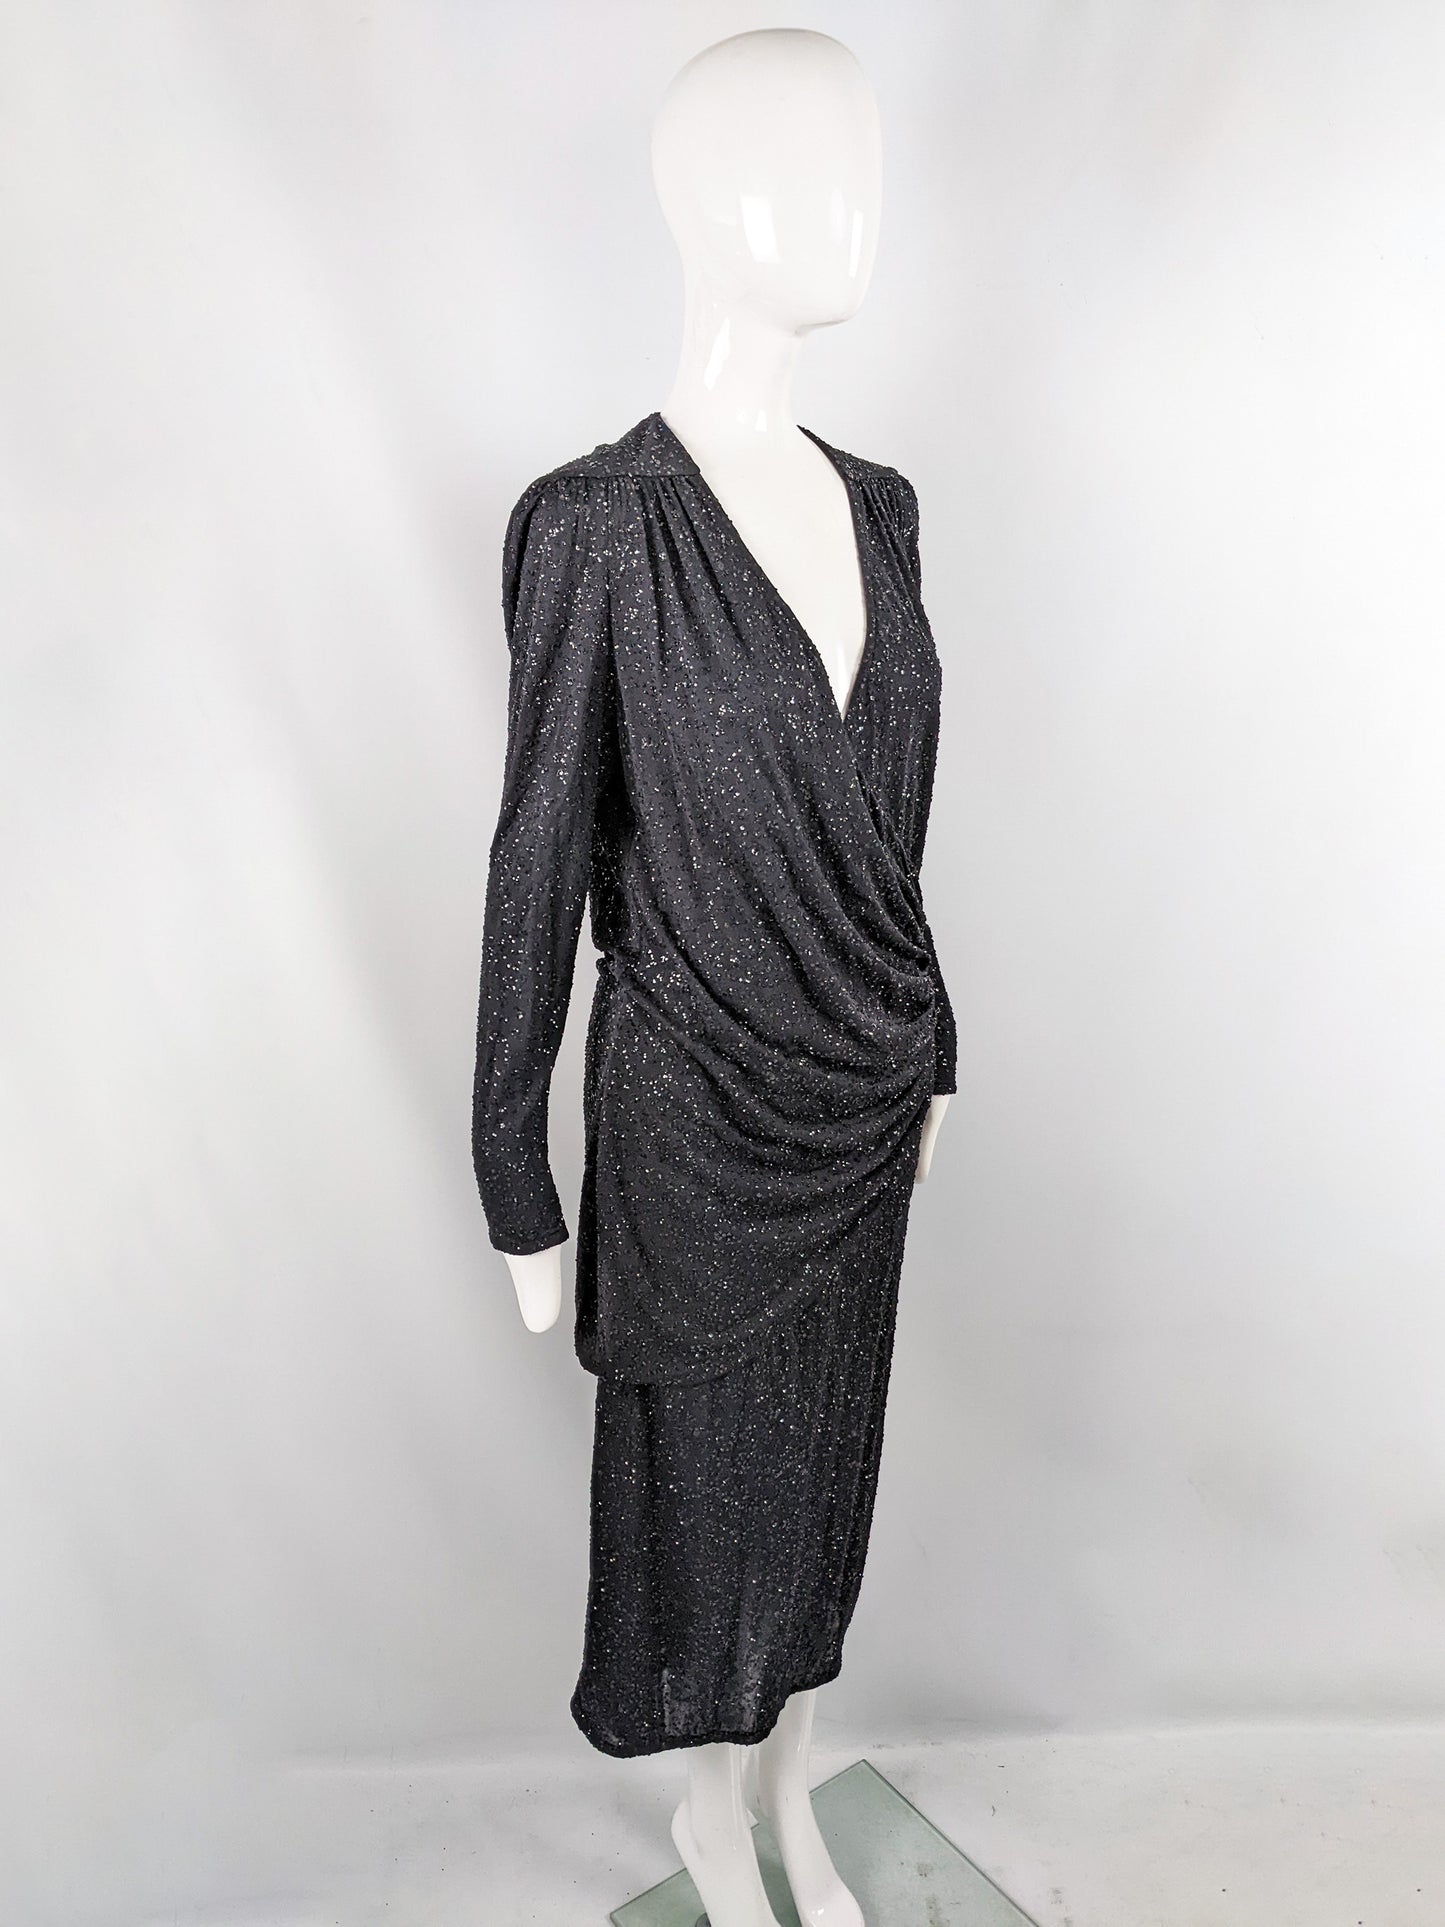 Frank Usher Vintage Black Sequin Glitter Effect Evening Dress, 1980s